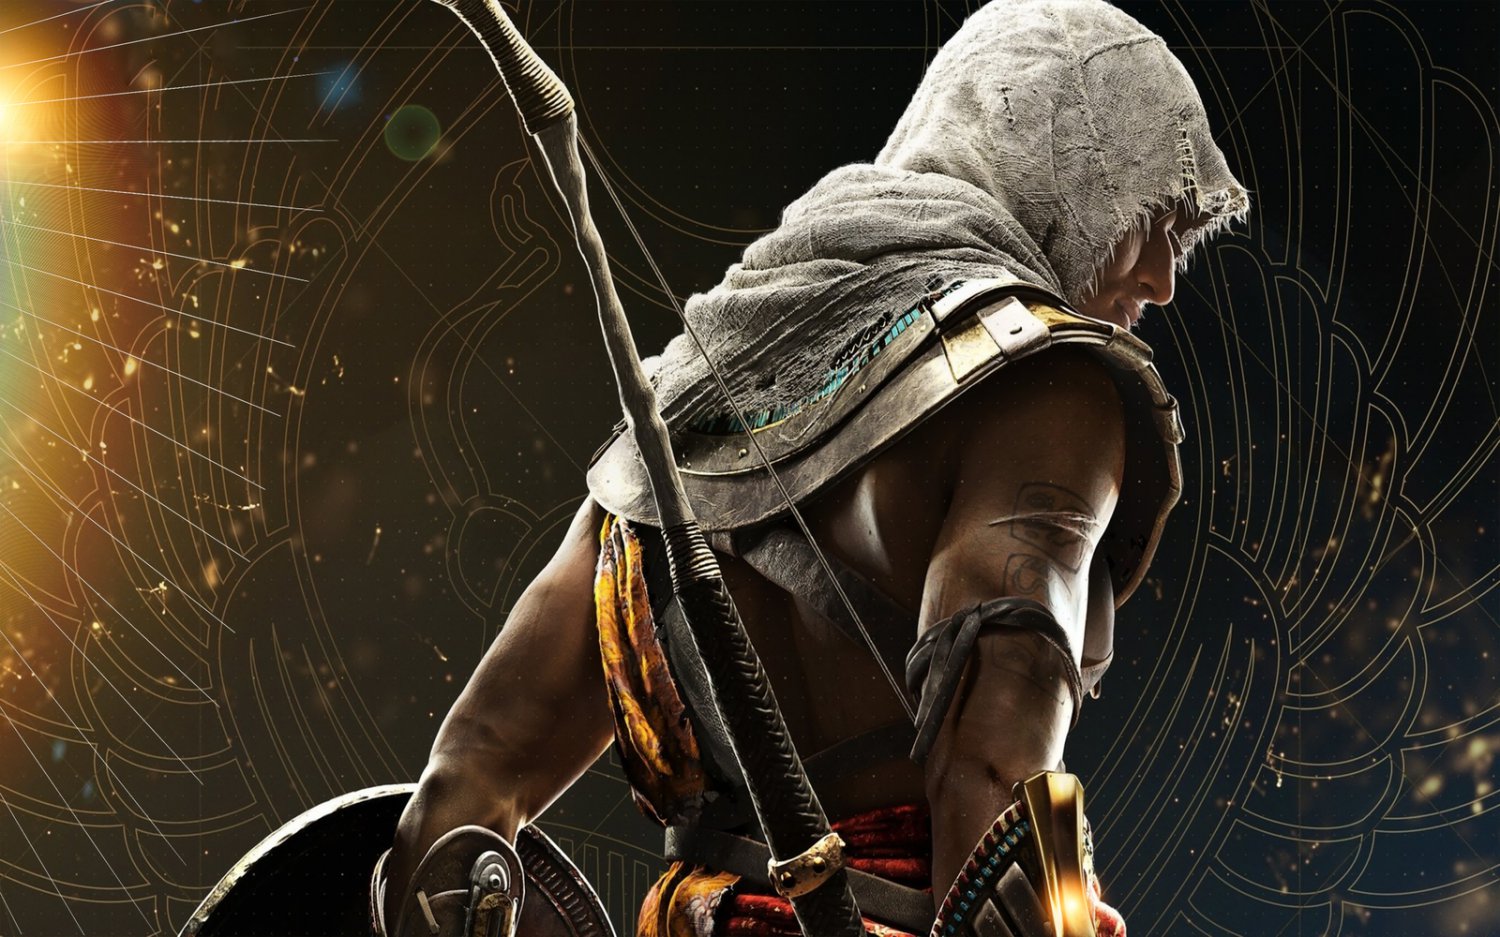 Assassin's Creed Origins Game 18"x28" (45cm/70cm) Poster